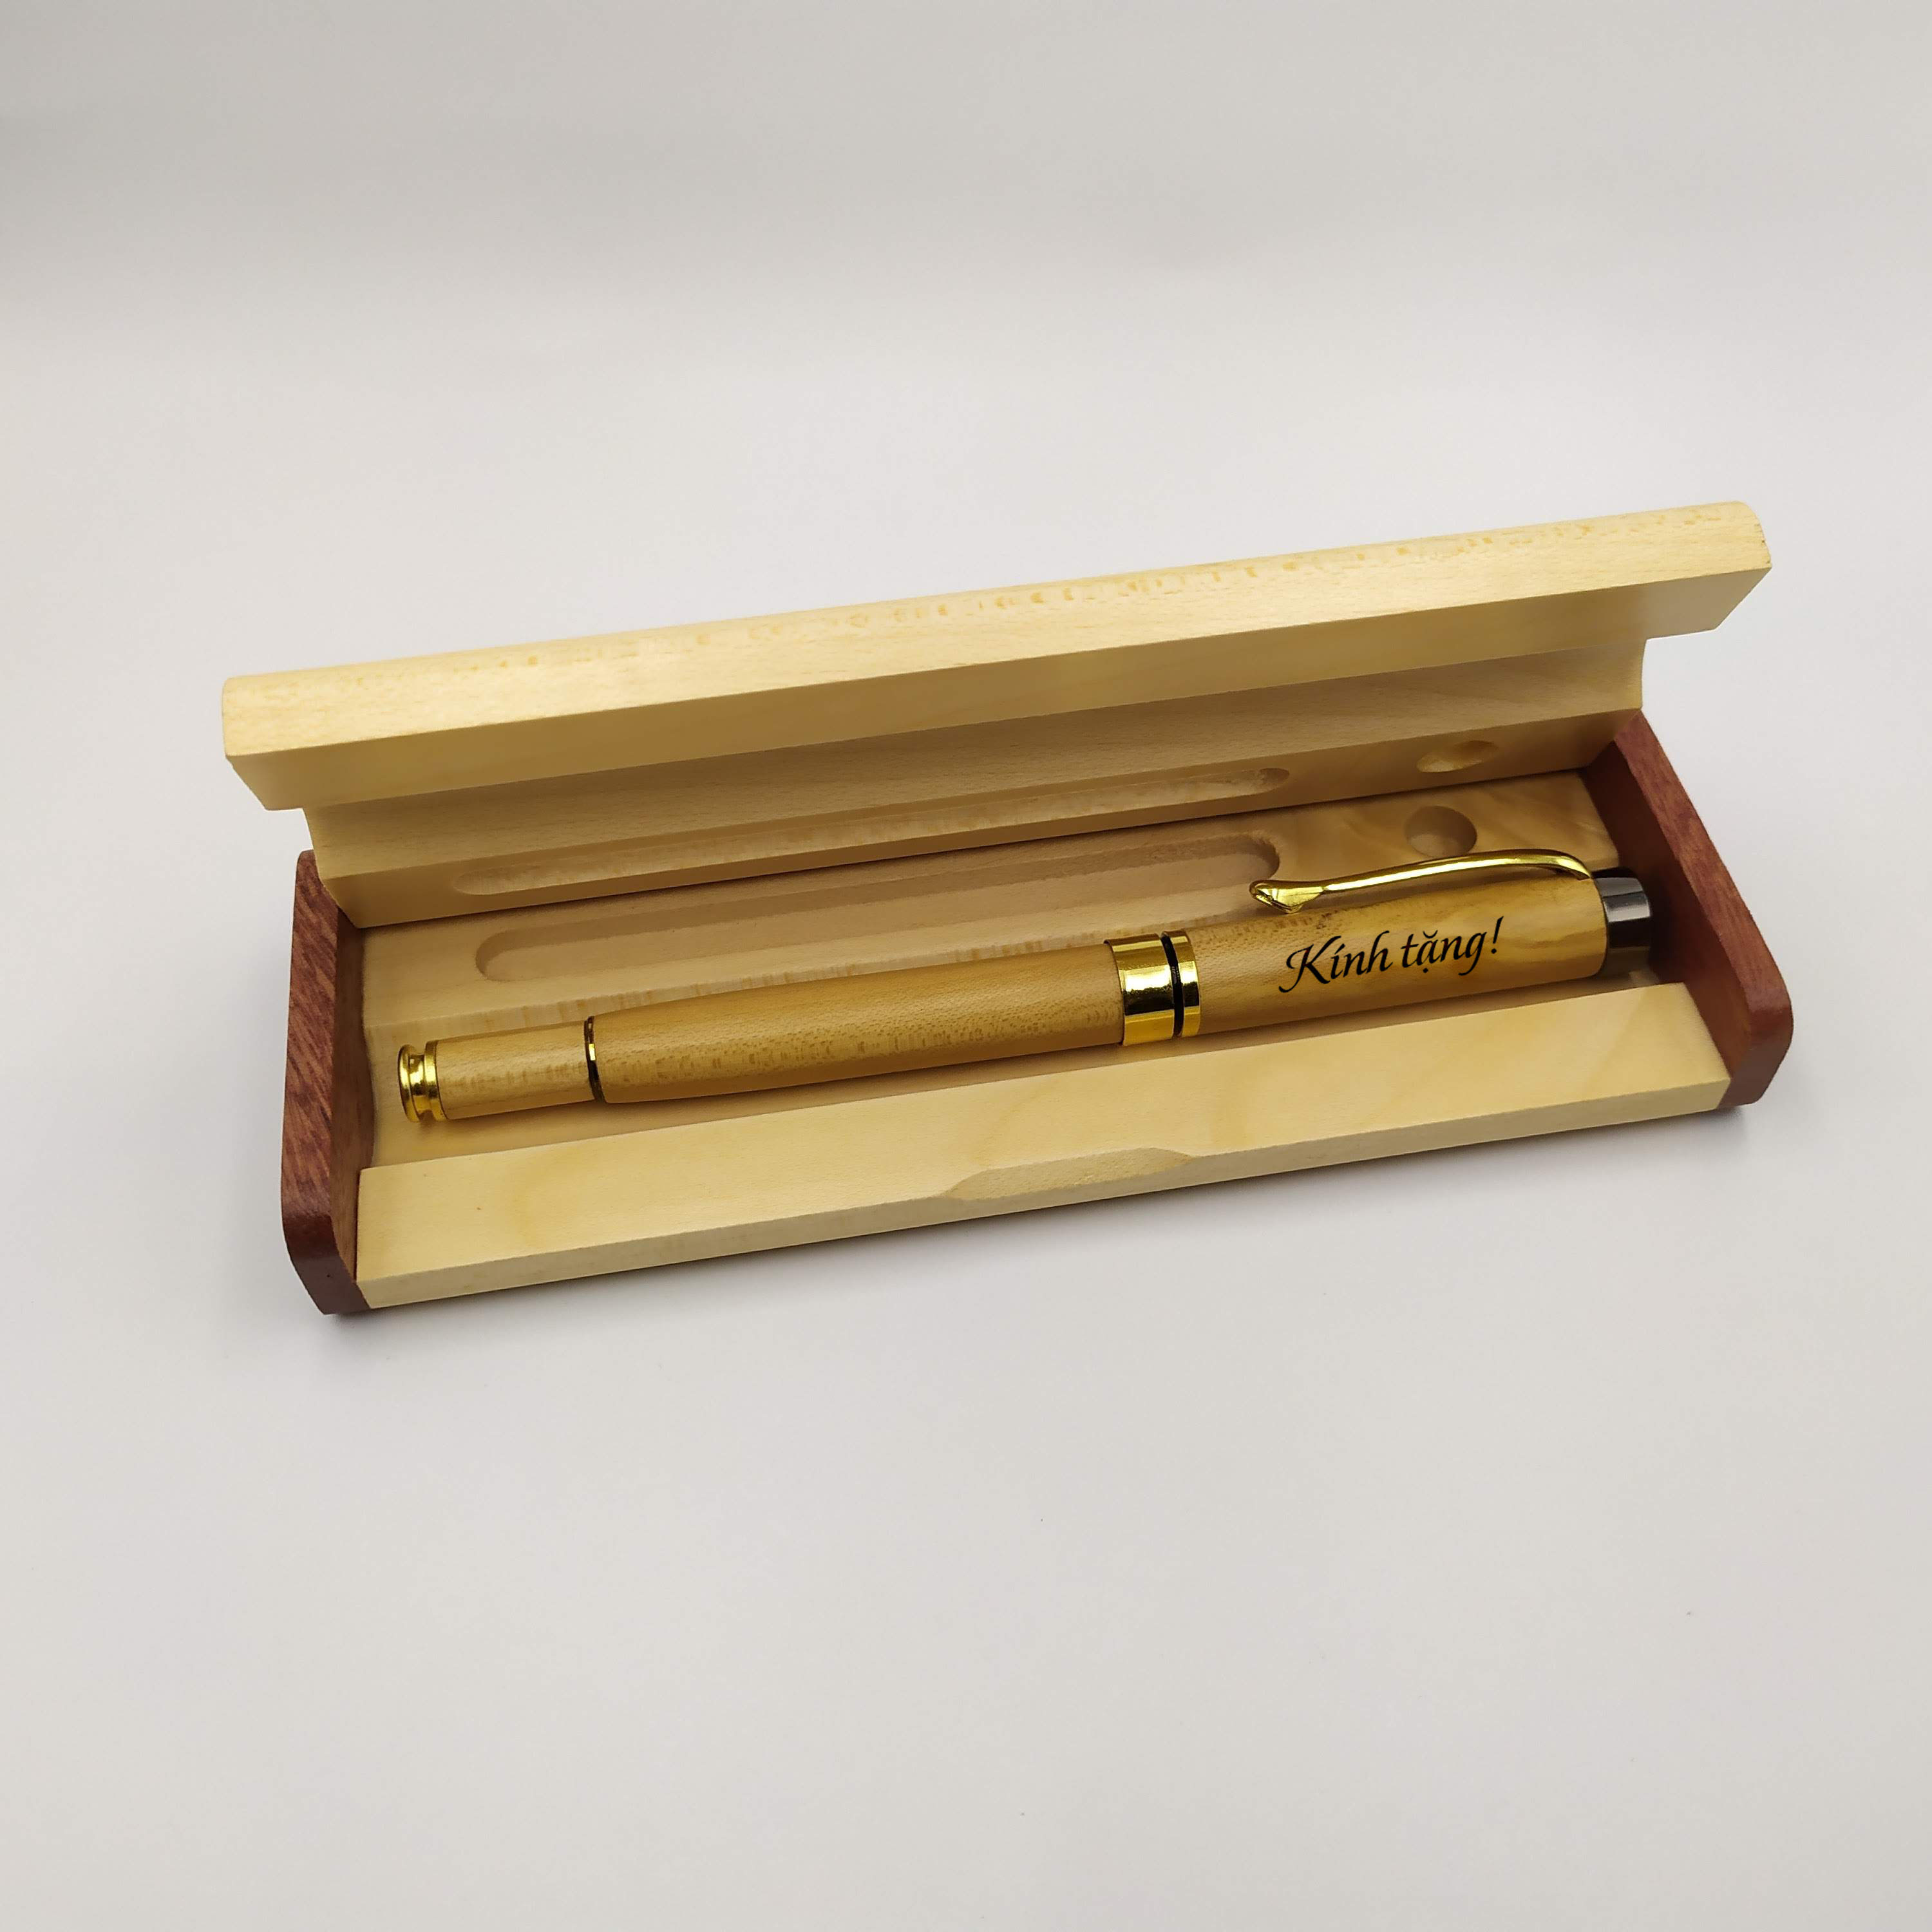 Bộ bút gỗ cao cấp tặng Thầy Cô - mẫu 01 (Kèm hộp đựng sang trọng)